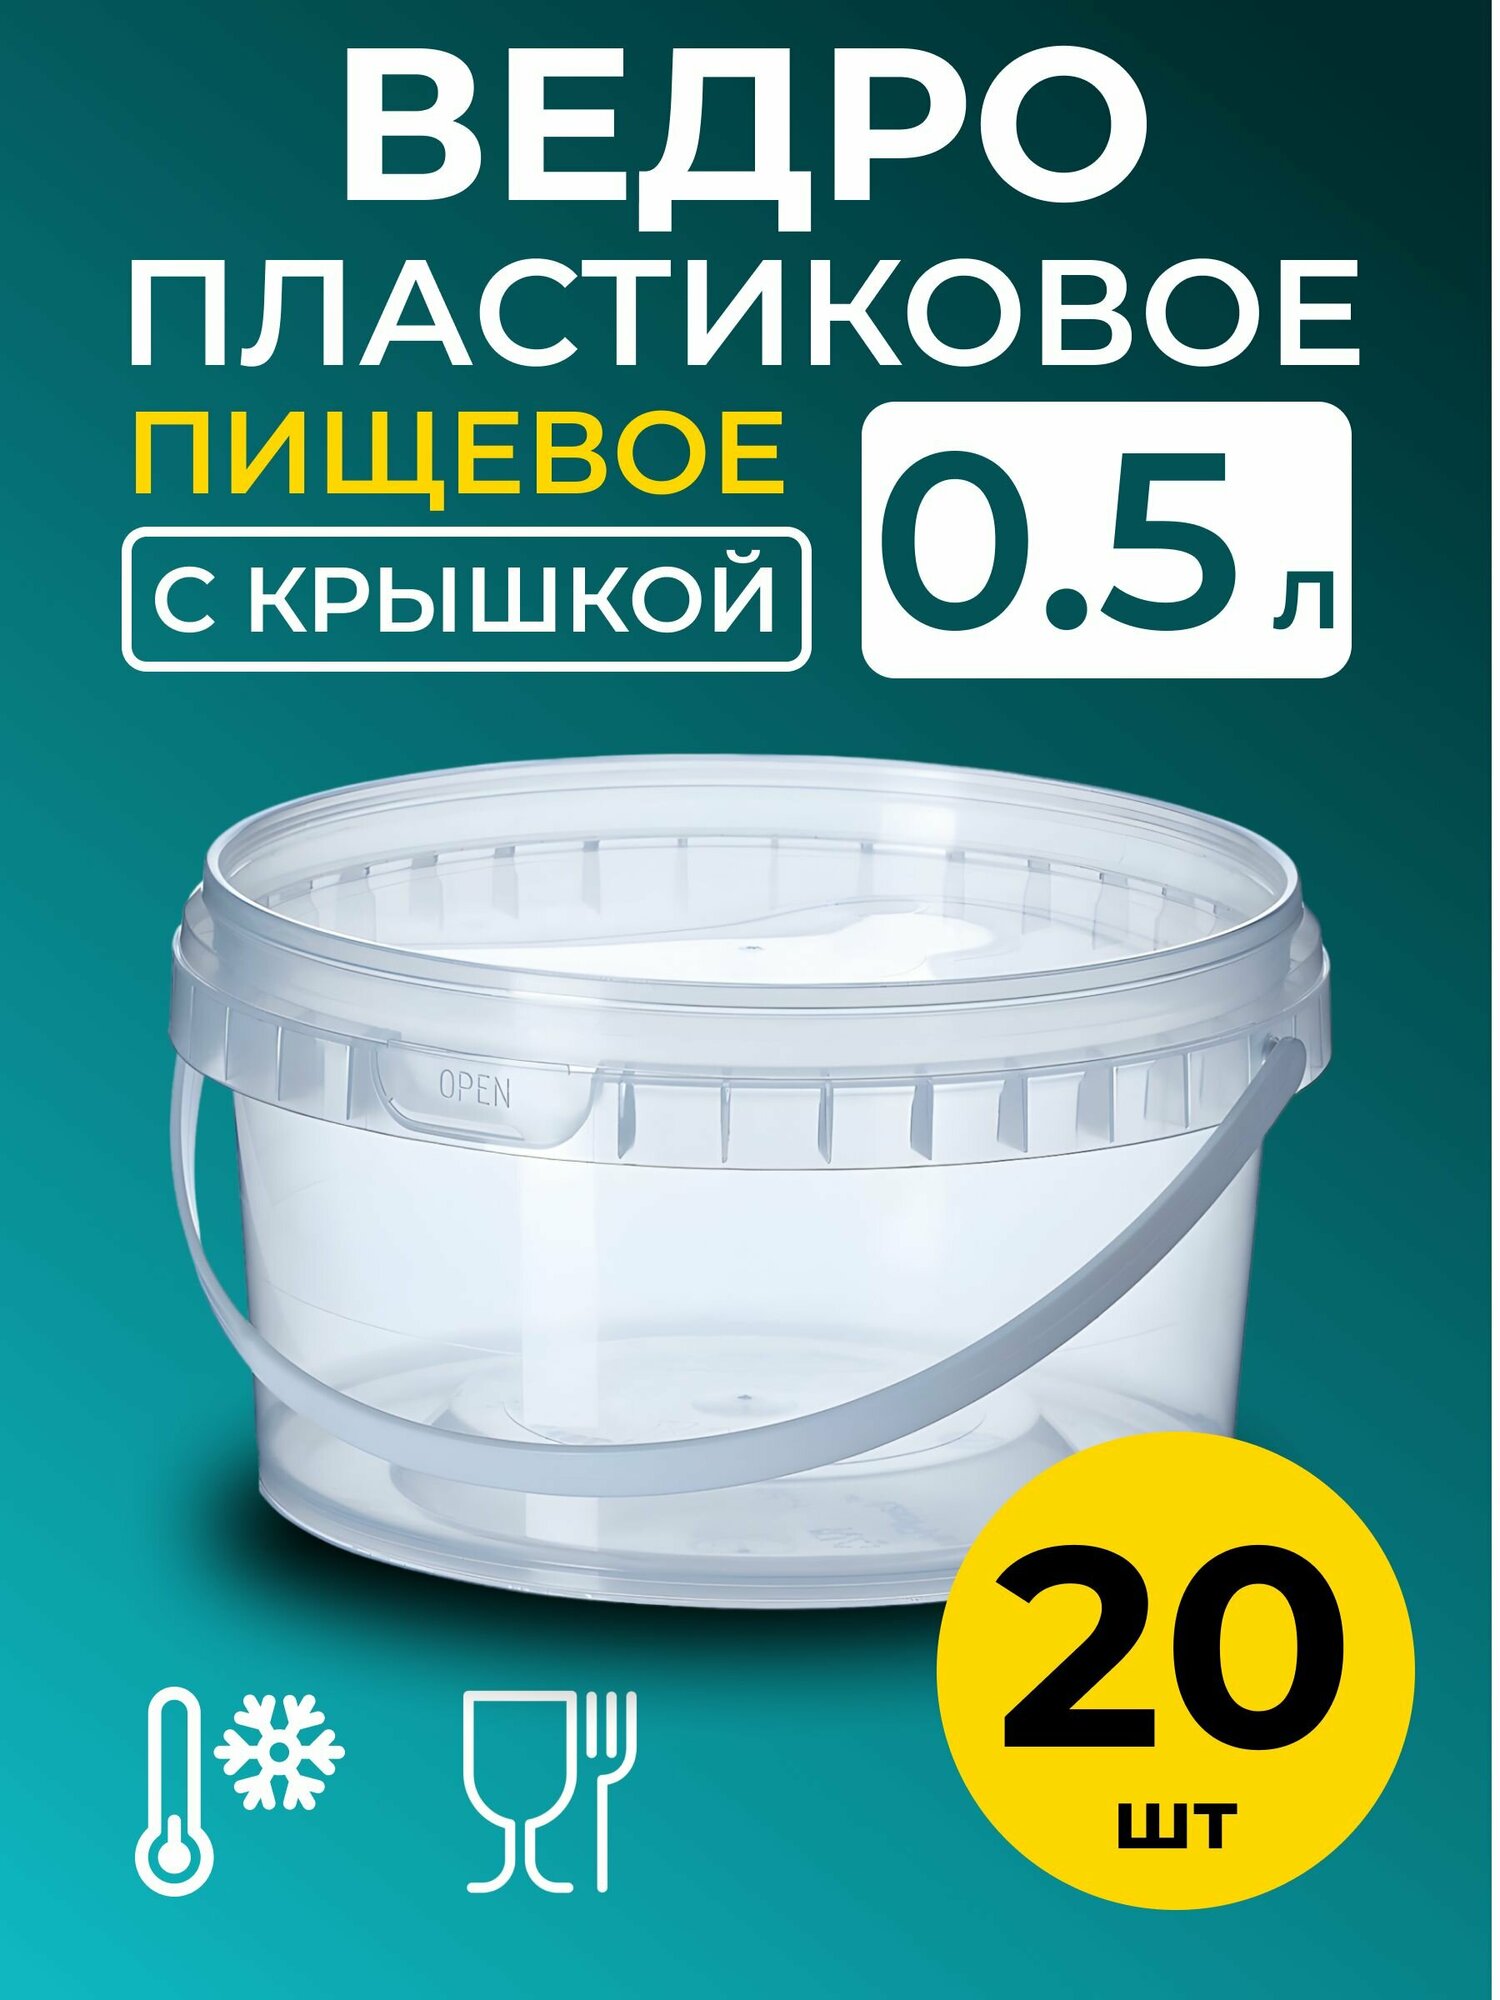 Ведро пластиковое пищевое с крышкой 0.5л (прозрачное), 20 шт.